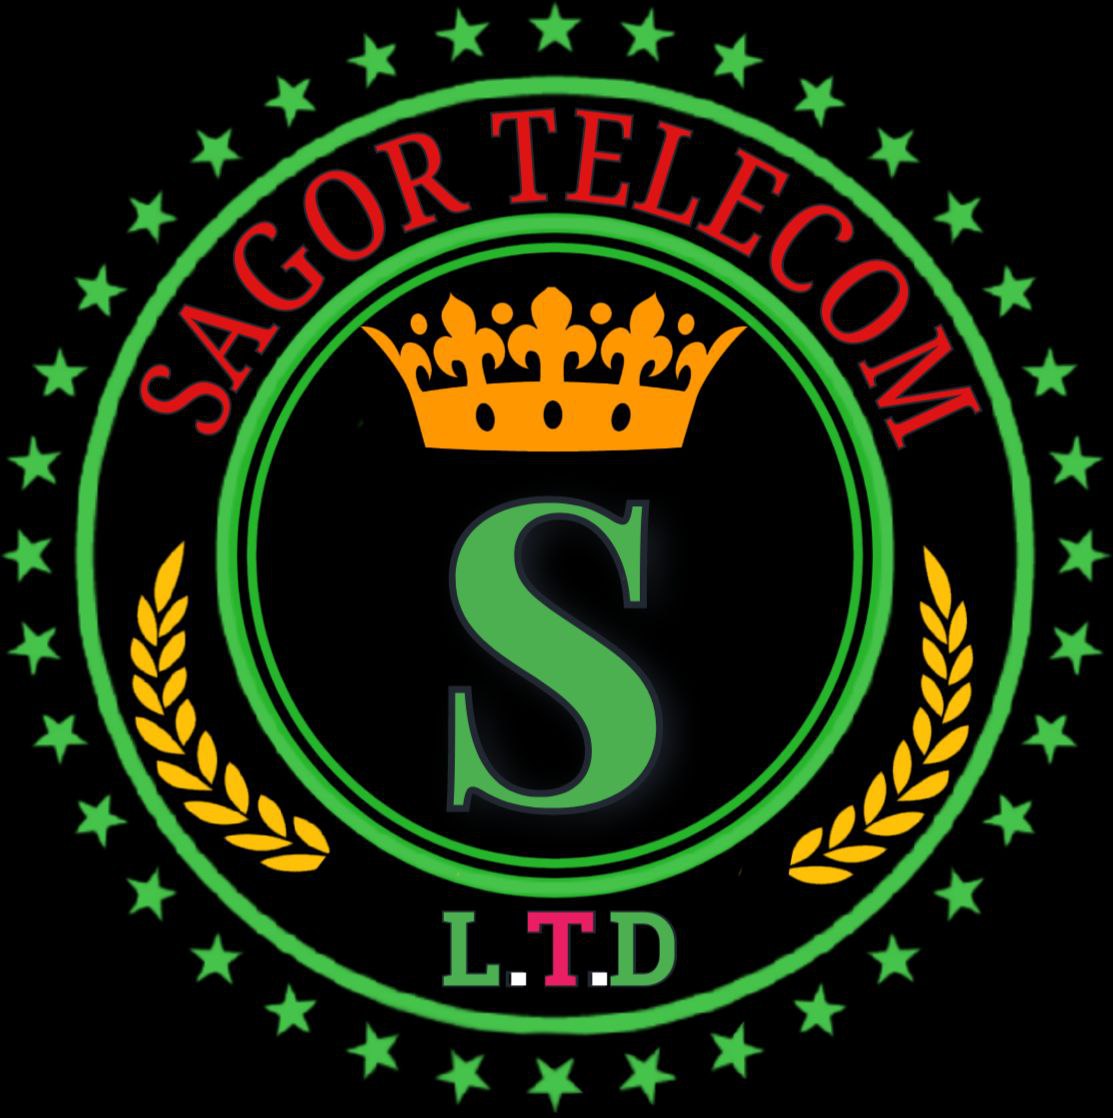 Sagor Telecom